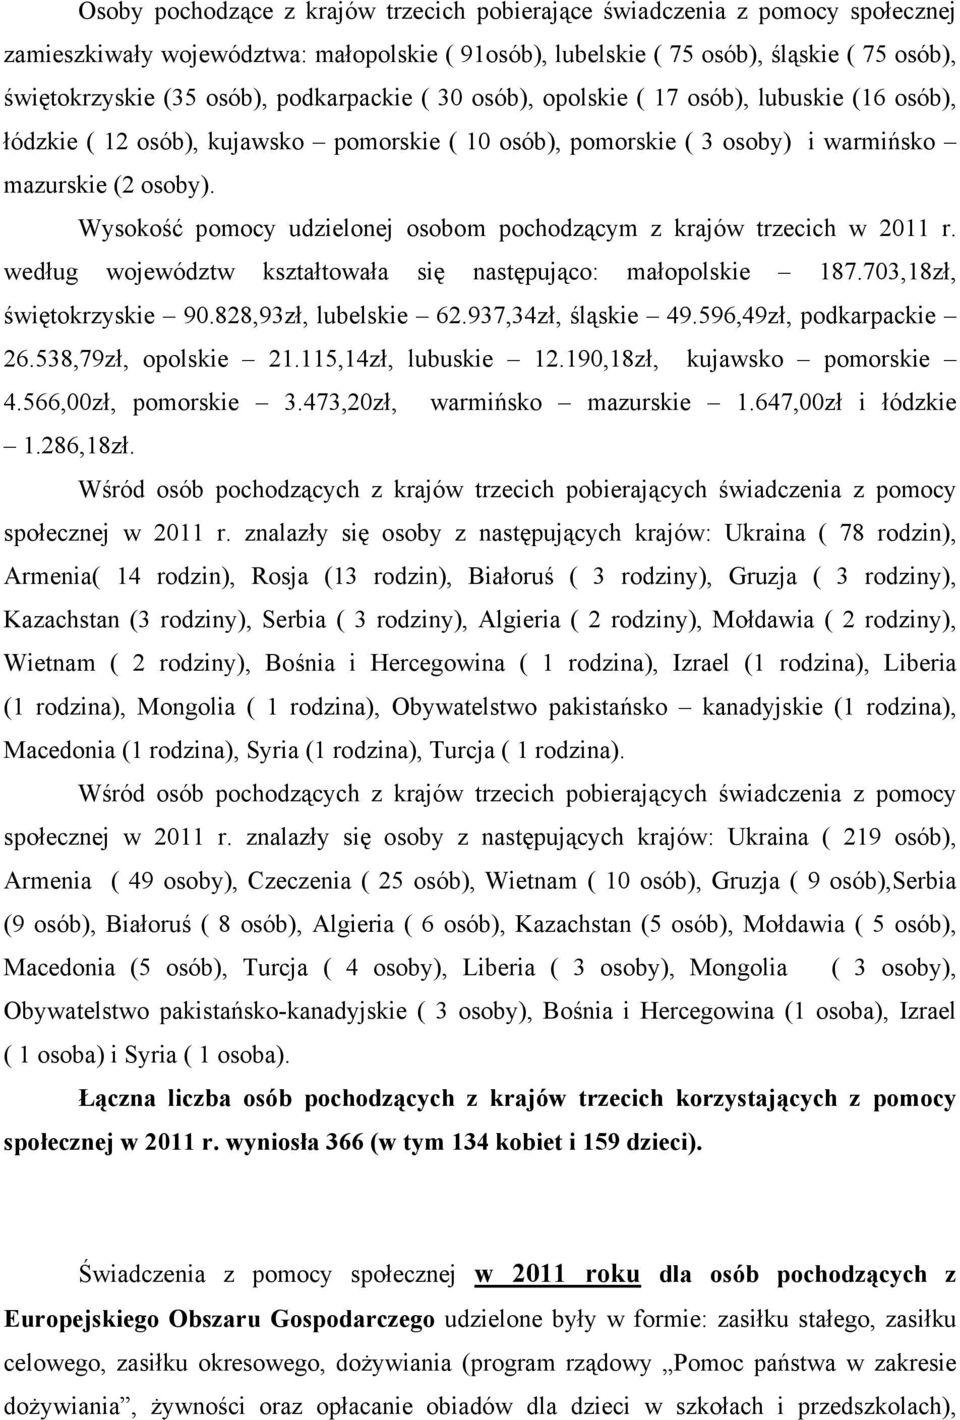 Wysokość pomocy udzielonej osobom pochodzącym z krajów trzecich w 2011 r. według województw kształtowała się następująco: małopolskie 187.703,18zł, świętokrzyskie 90.828,93zł, lubelskie 62.